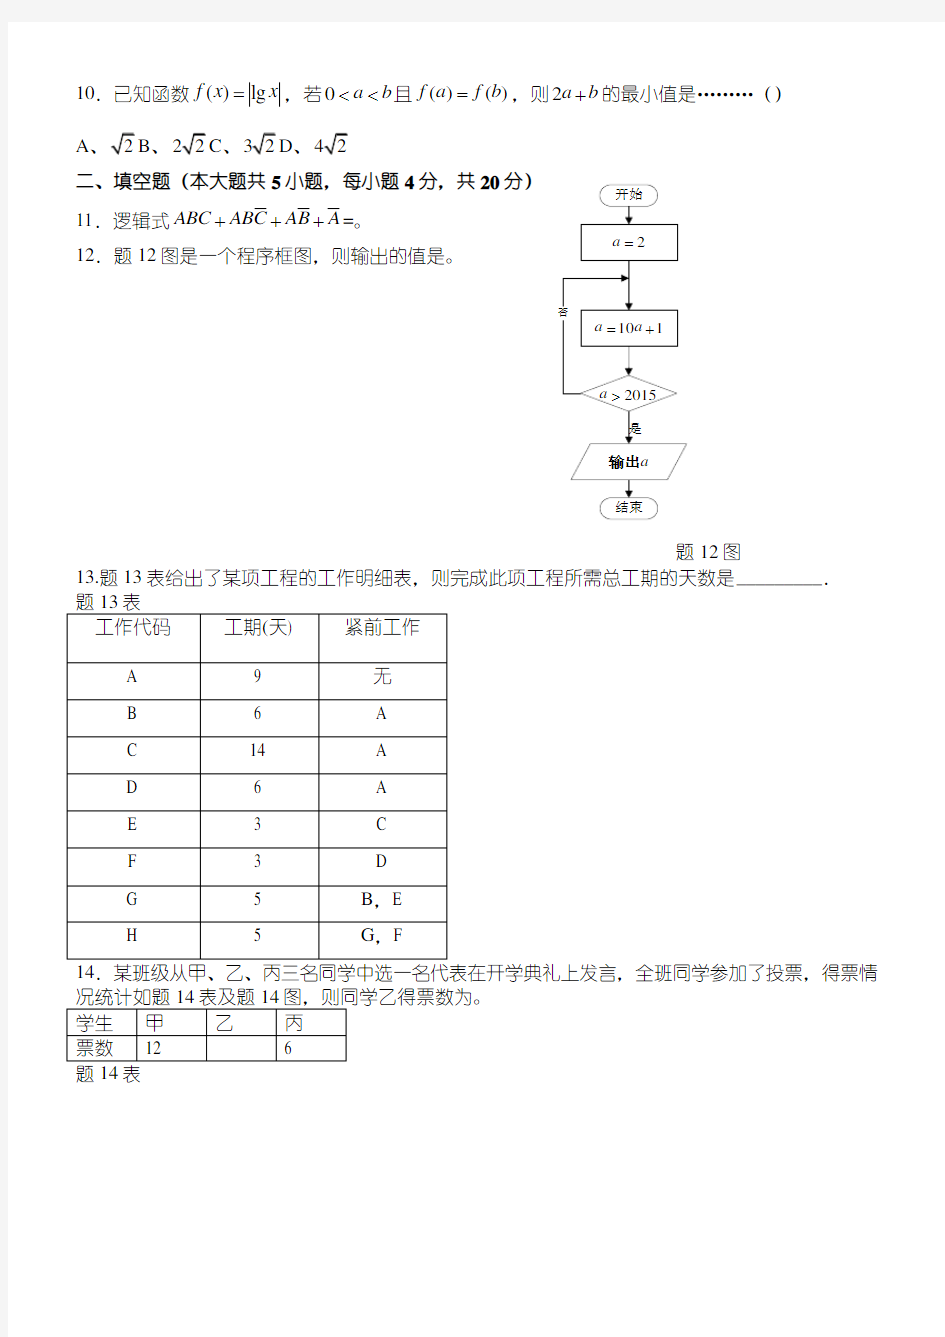 2015年江苏省对口单招文化课考试数学试卷及参考答案